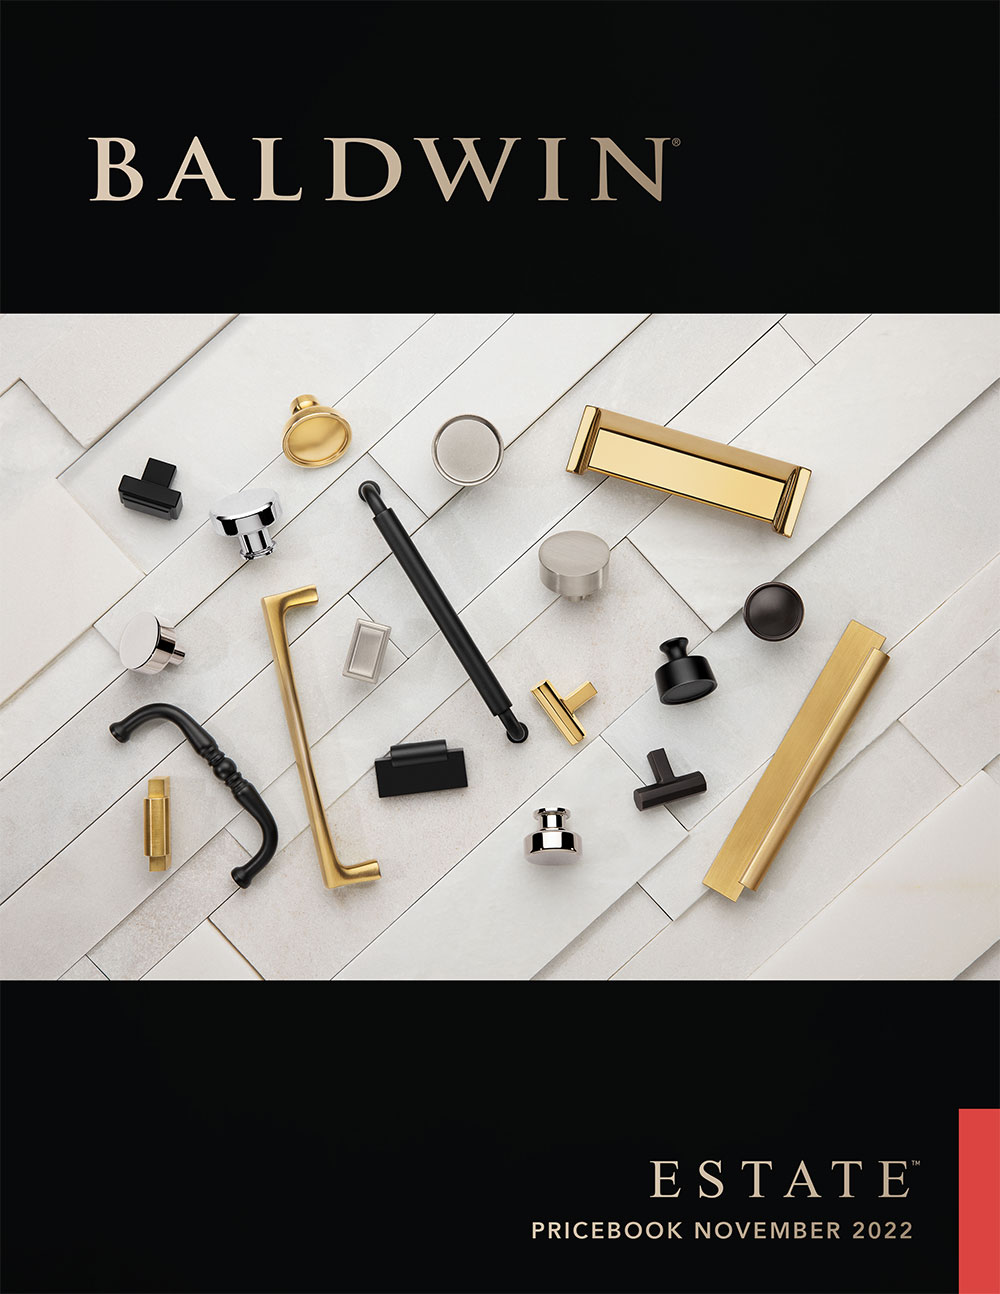 Baldwin Estate Price Book November 2022